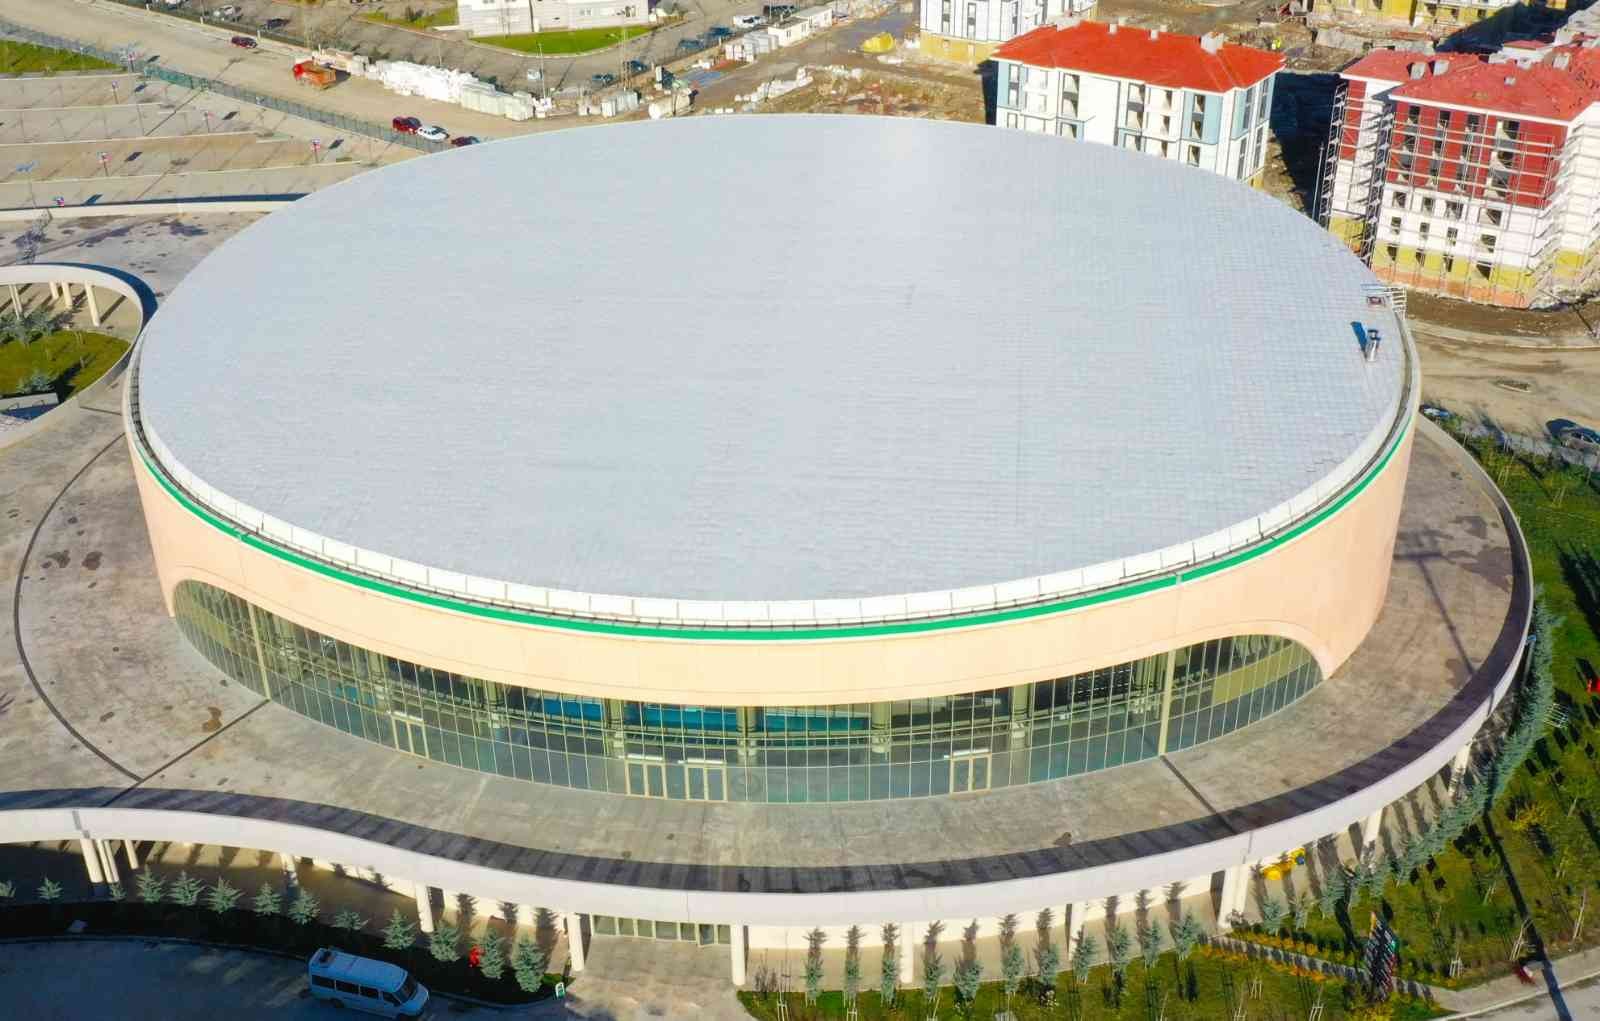 Giresun’da Çotanak Spor Kompleksi Olimpik Yüzme Havuzu hizmete açıldı #giresun